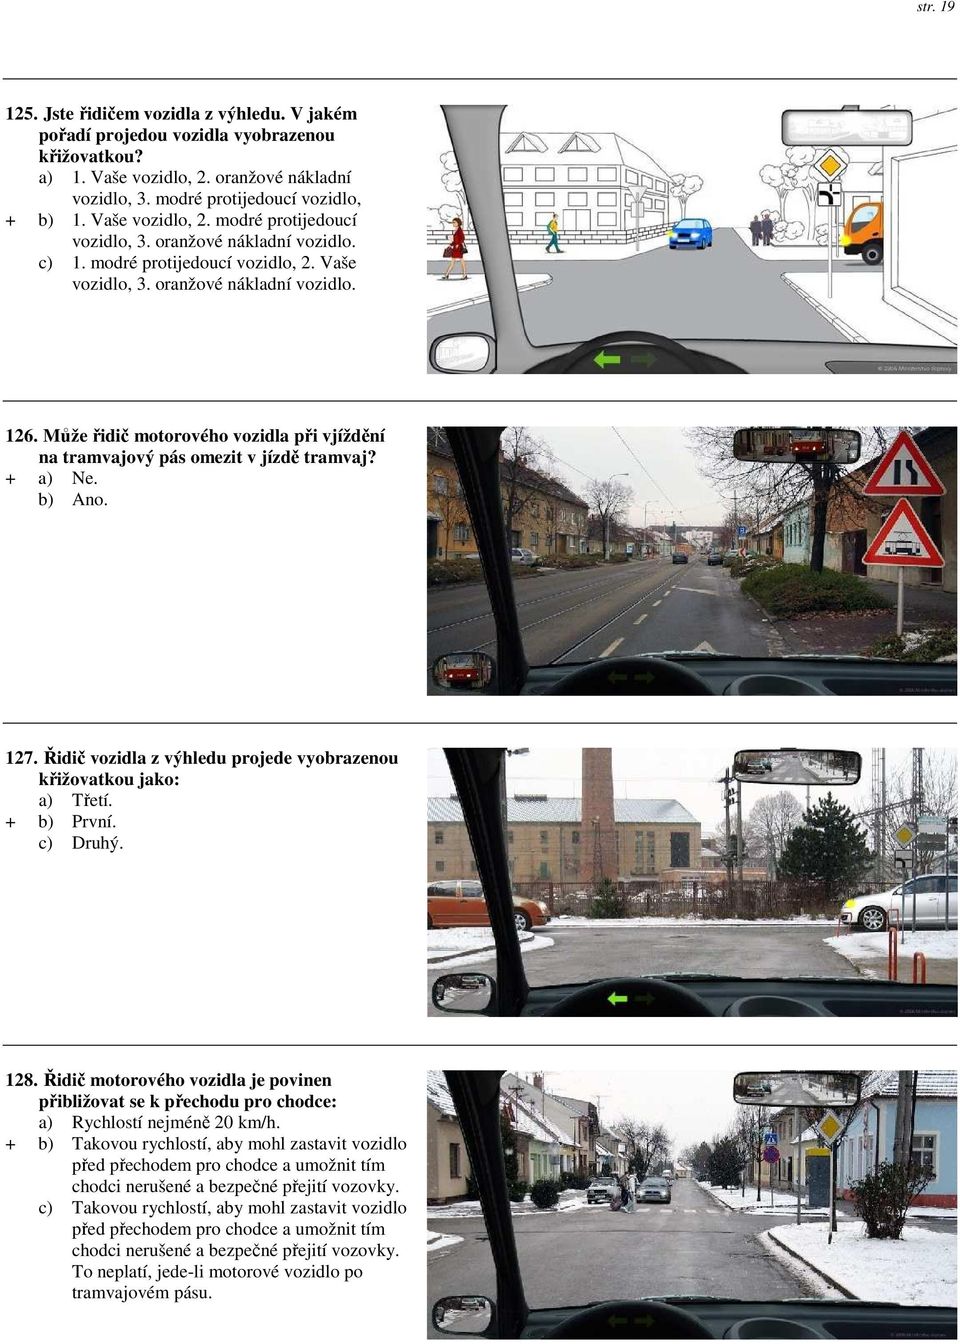 Může řidič motorového vozidla při vjíždění na tramvajový pás omezit v jízdě tramvaj? + a) Ne. b) Ano. 127. Řidič vozidla z výhledu projede vyobrazenou křižovatkou jako: a) Třetí. + b) První. c) Druhý.